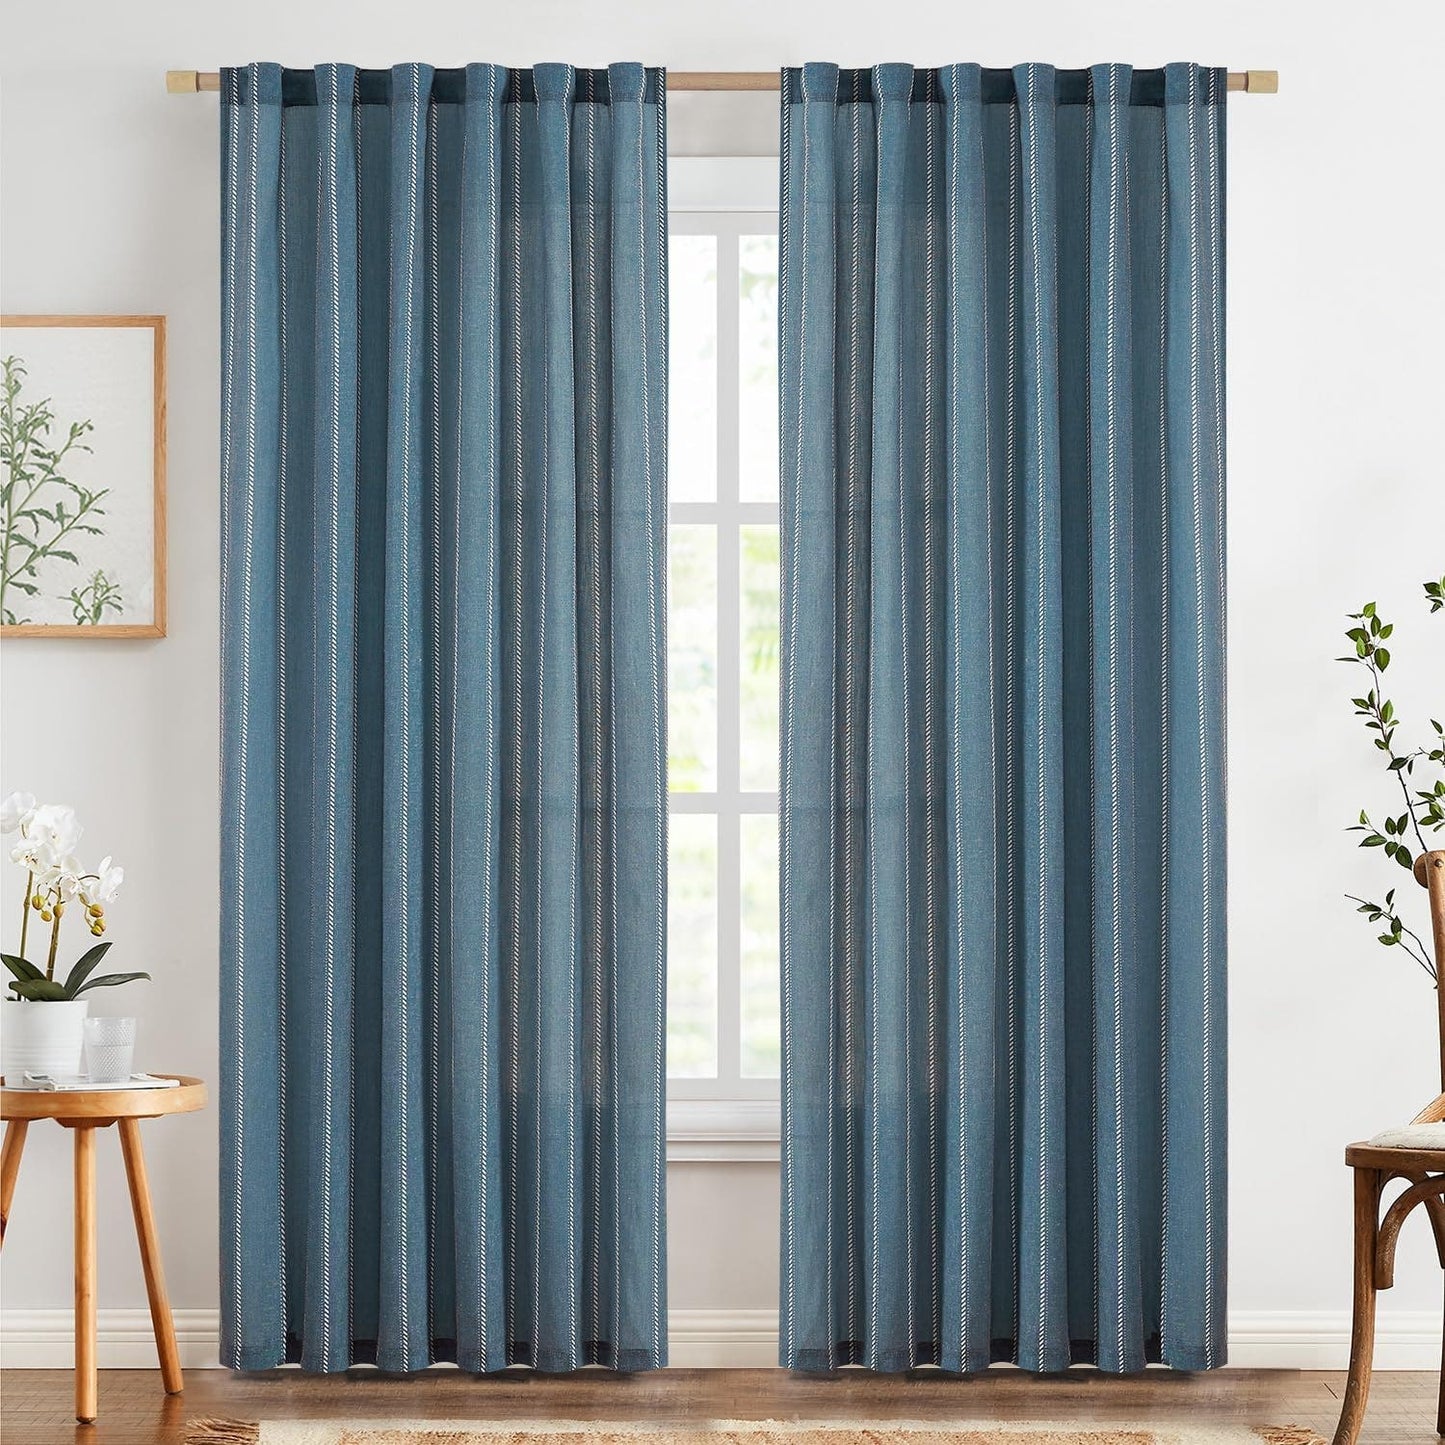 Linen Curtains 50"W x 84"L Blue Sailor Striped Panels (2) Rustic Farmhouse